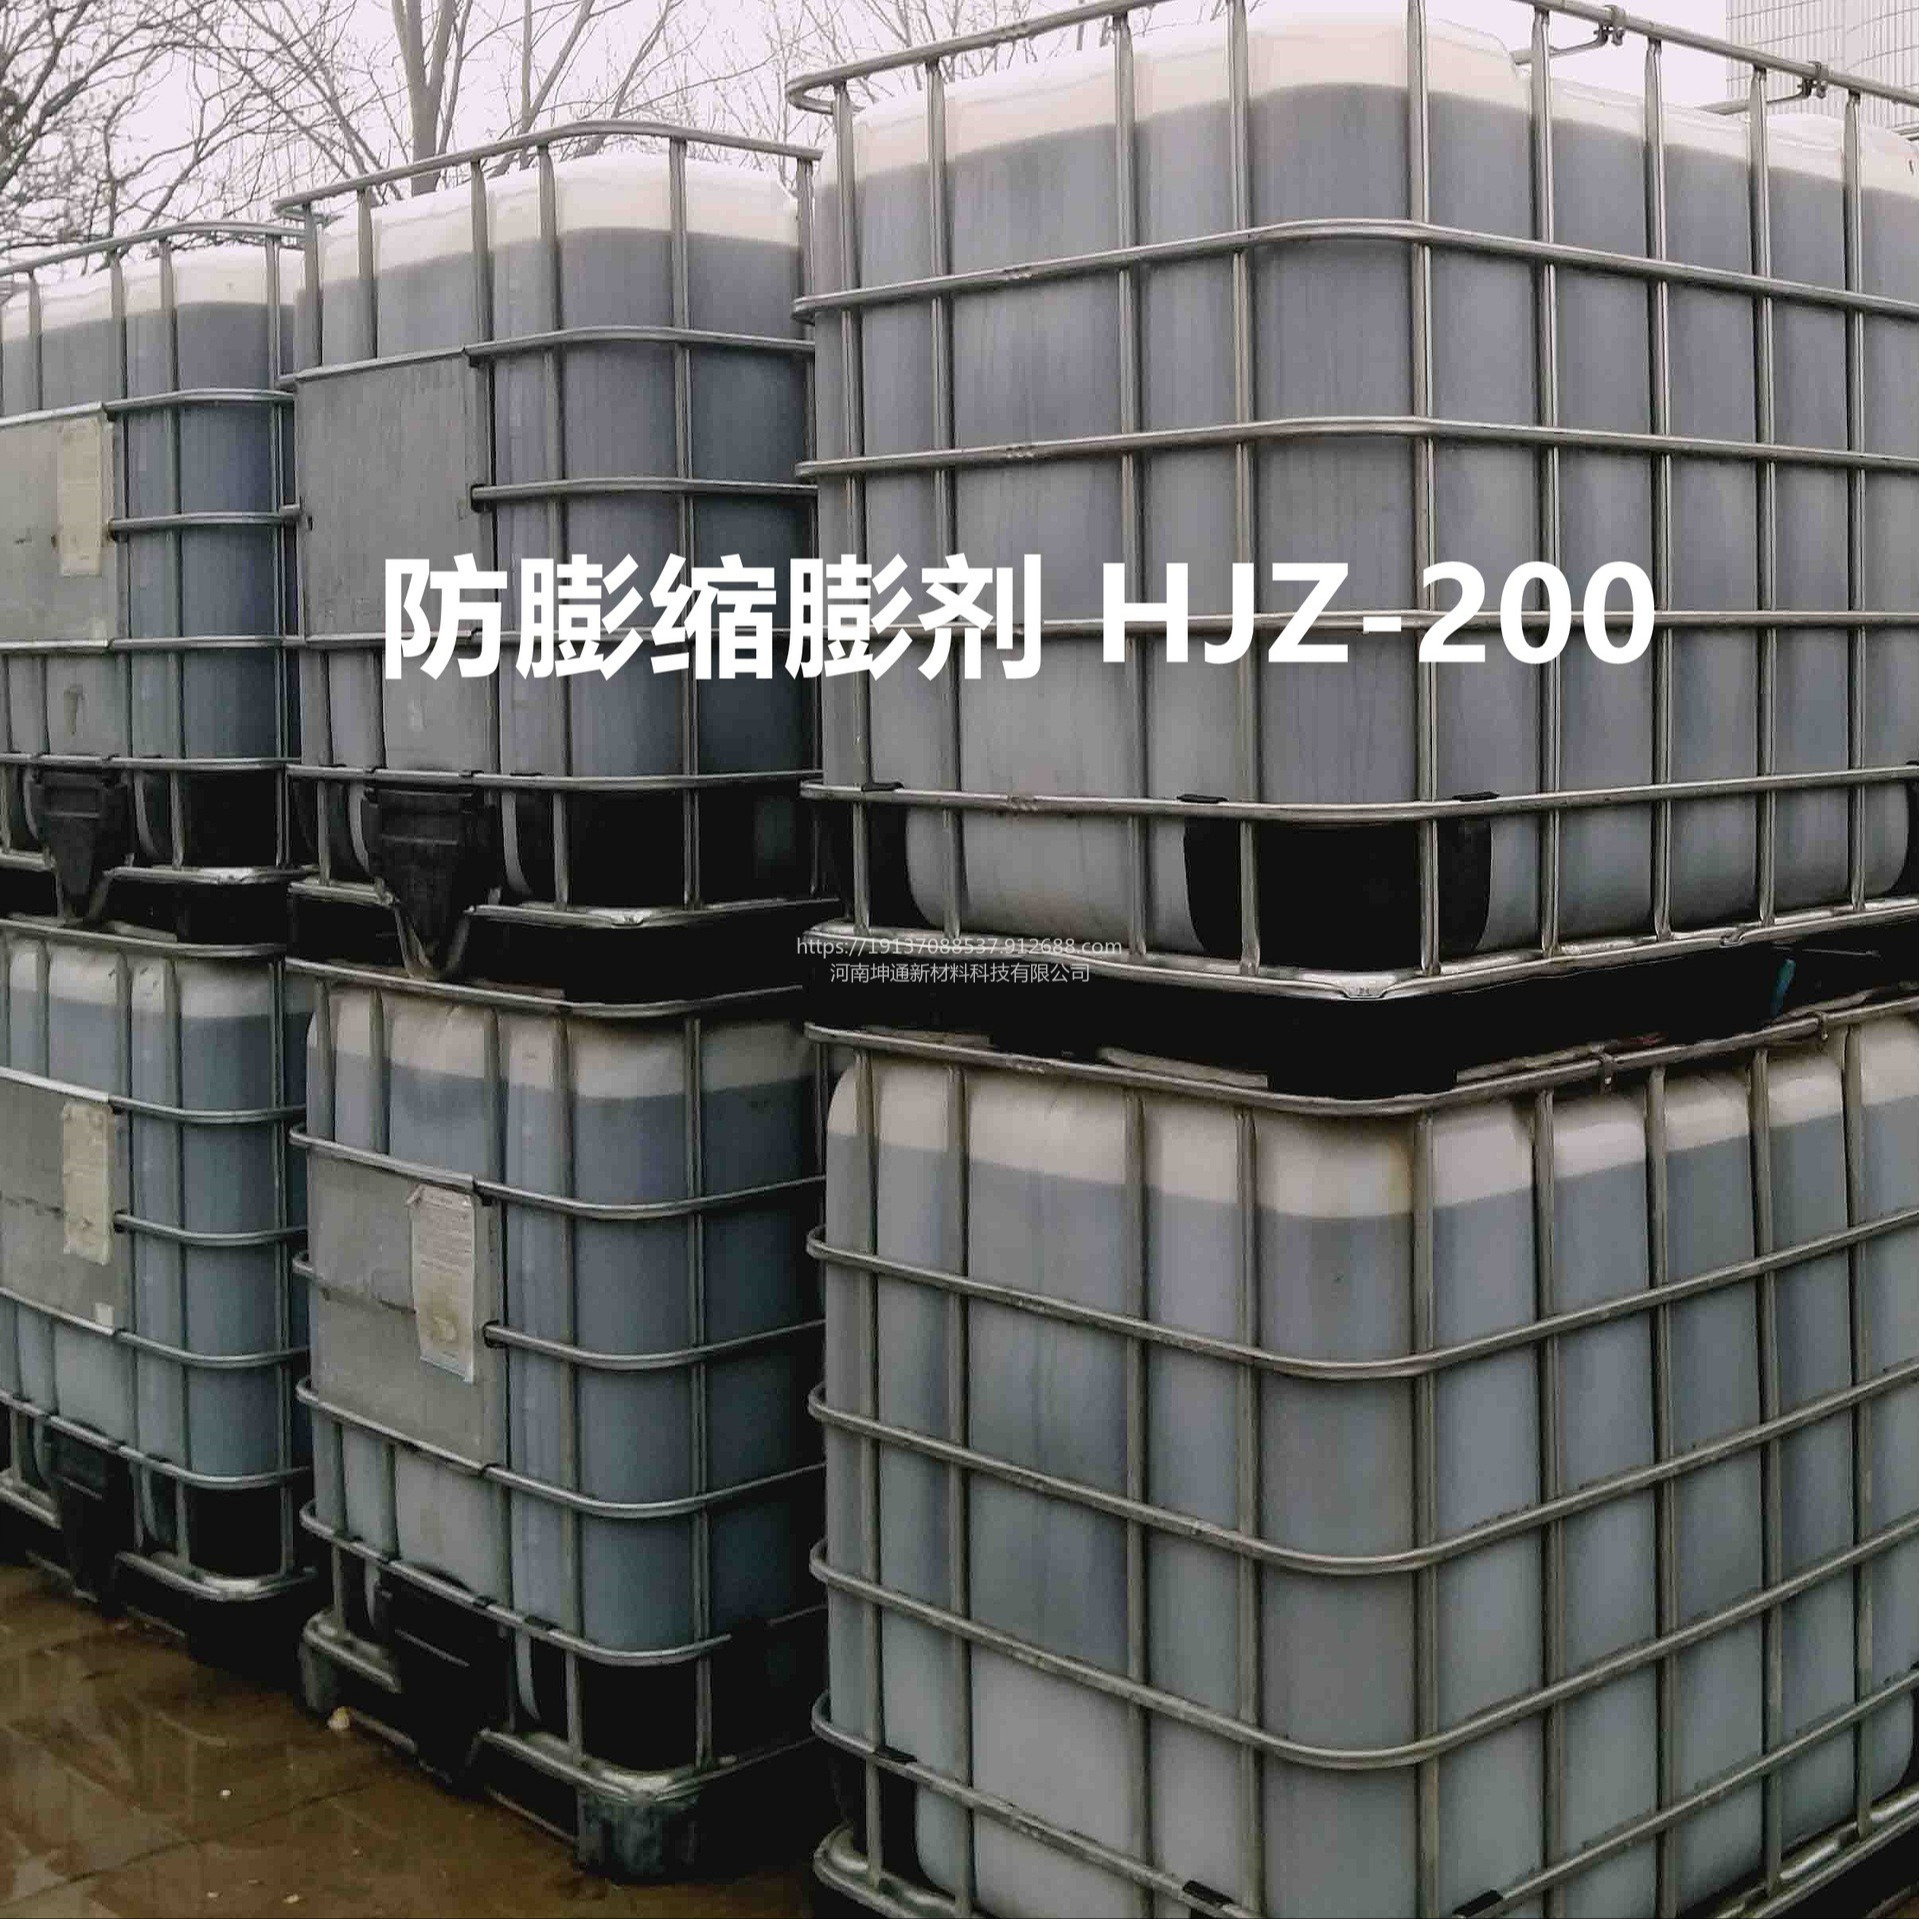 防膨缩膨剂HJZ-200   粘土稳定剂  低渗油藏粘土防膨缩膨剂图片